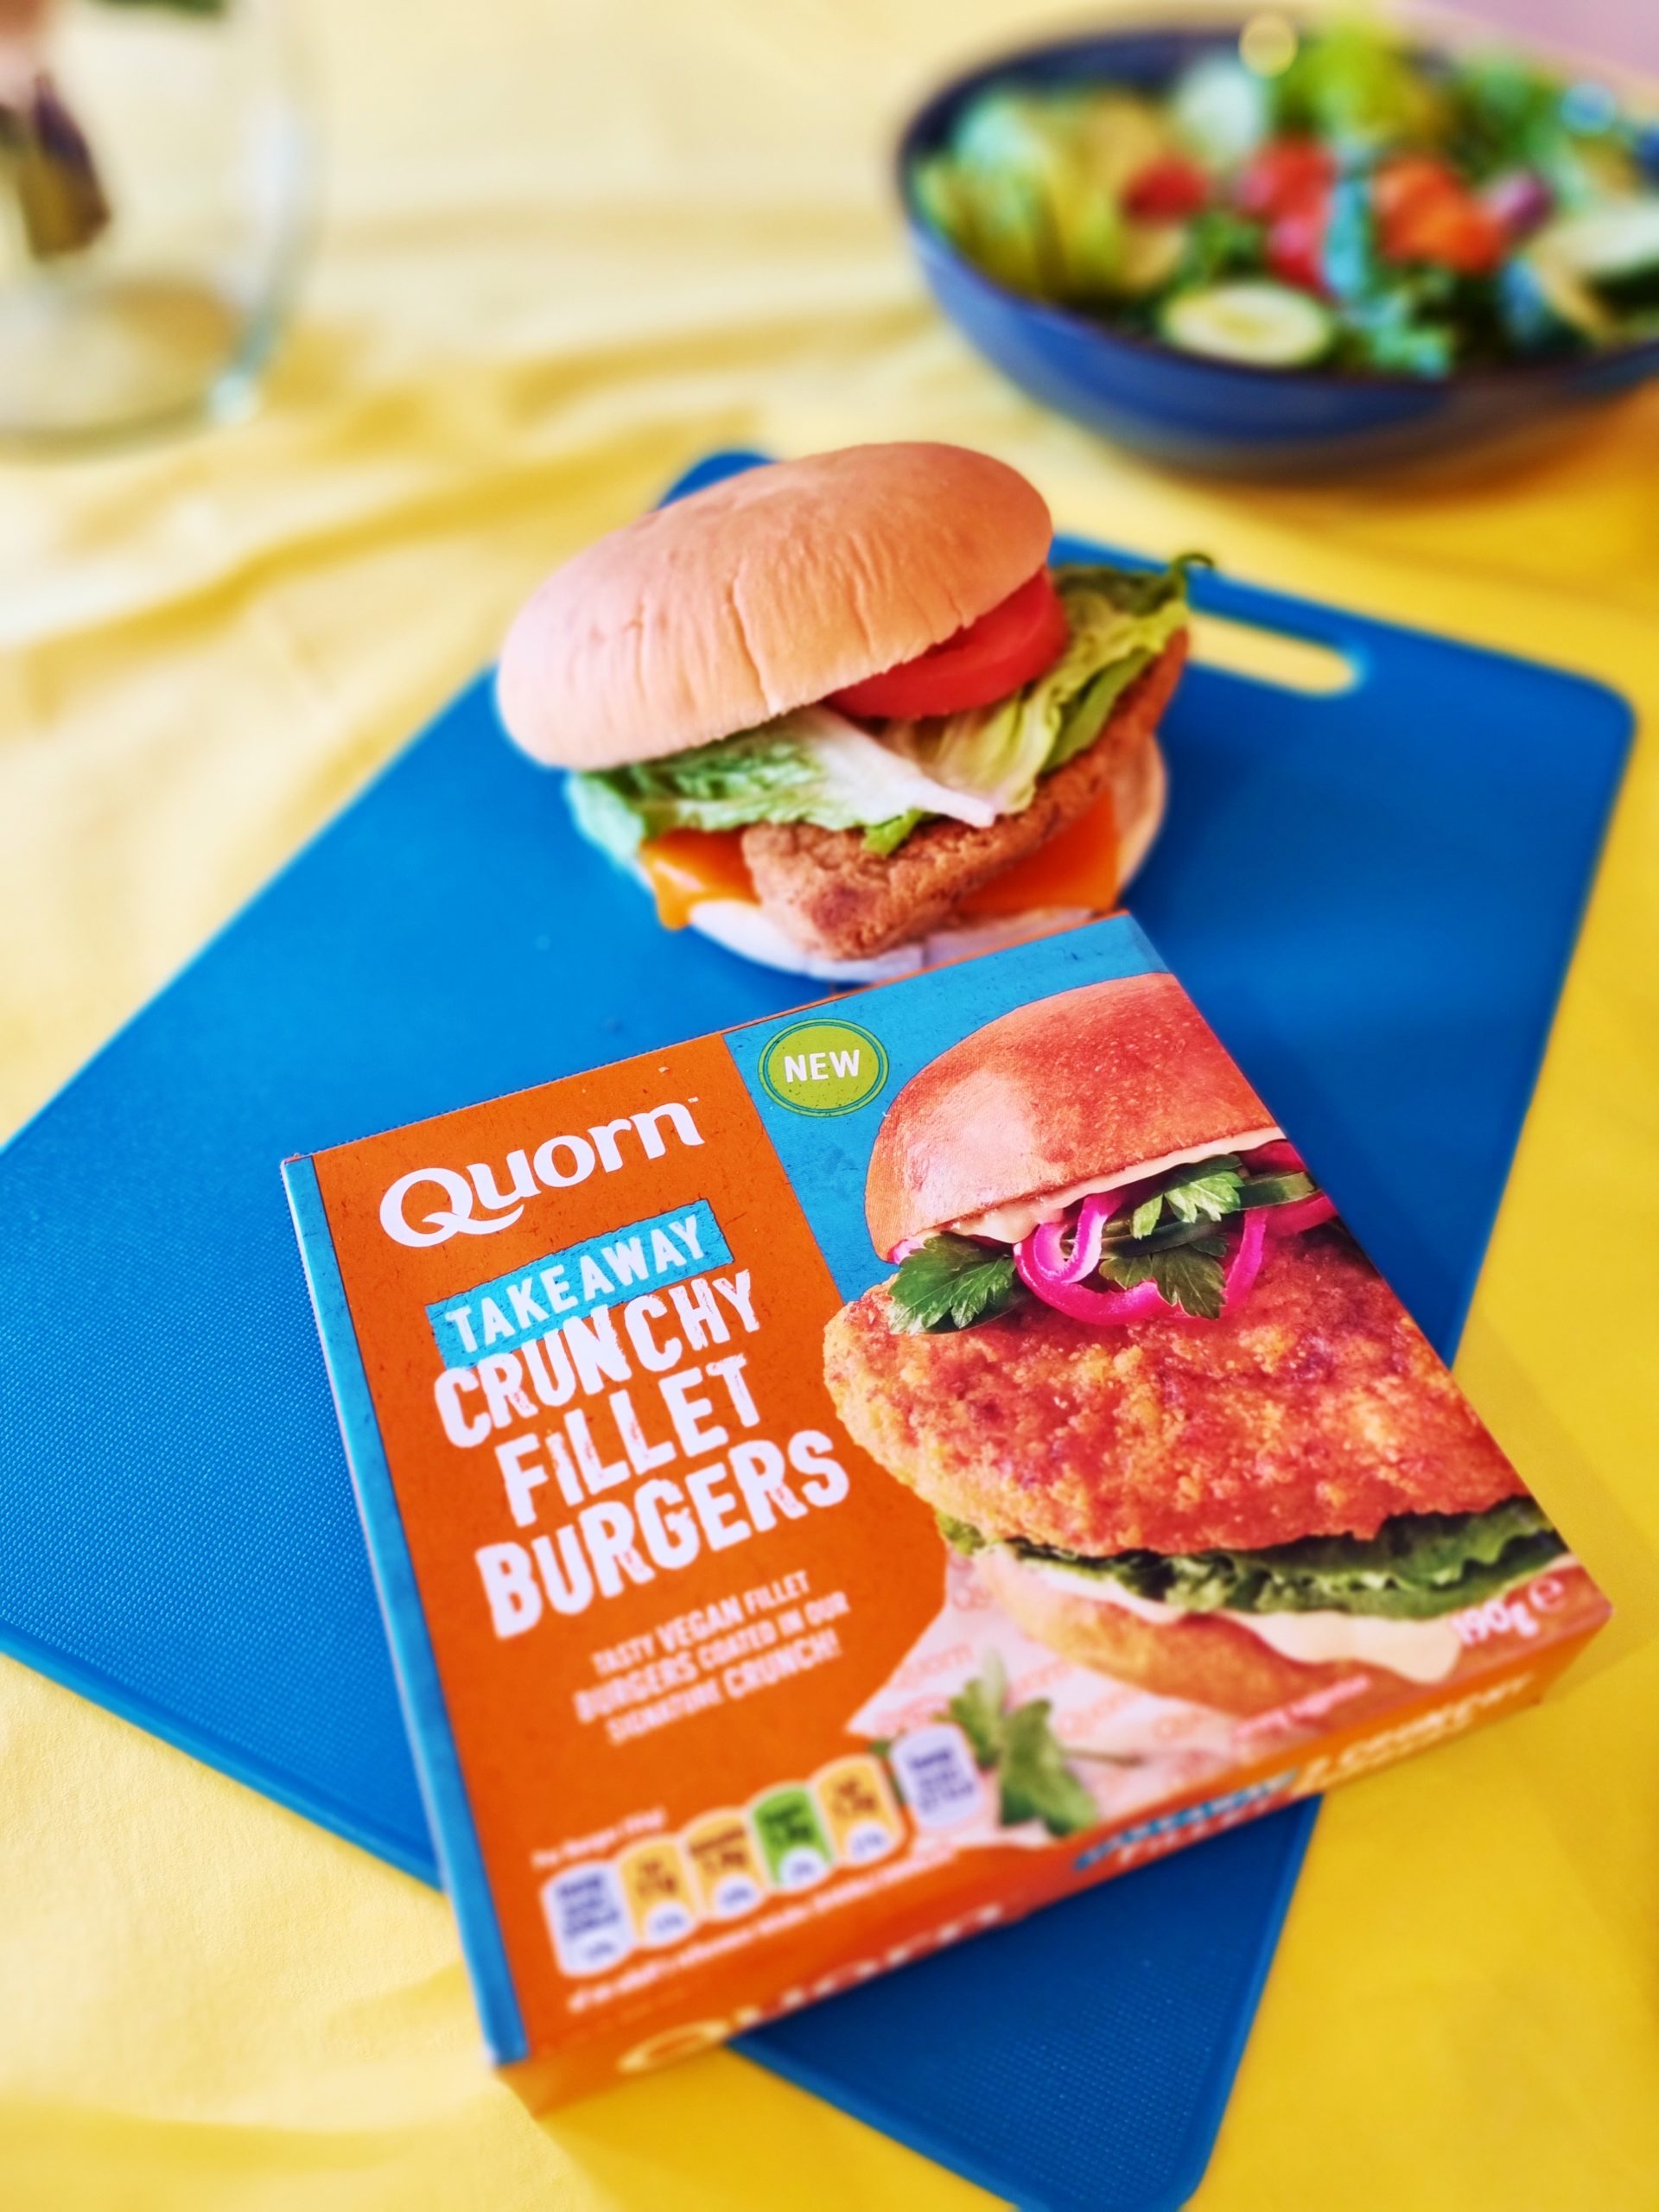 <img src="vegan.jpg" alt="vegan takeaway quorn chicken burger"/> 